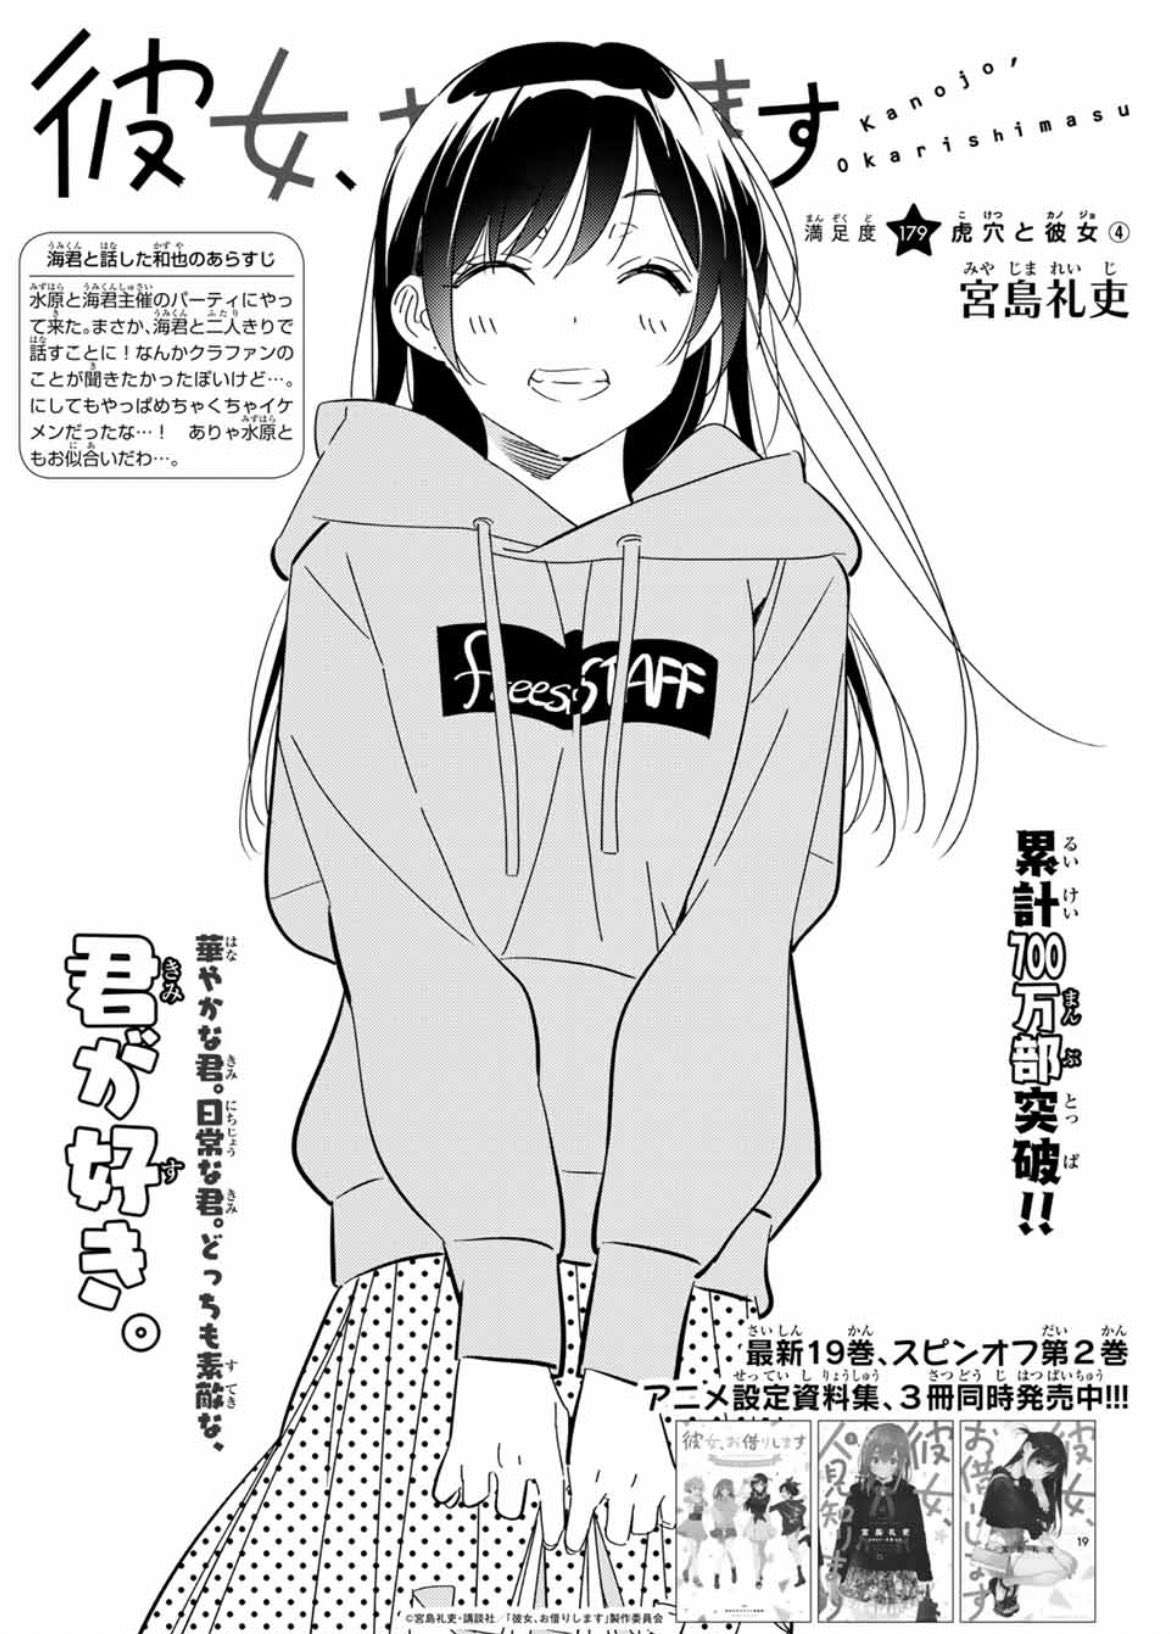 Kanojo, Okarishimasu Capítulo 297 - Manga Online